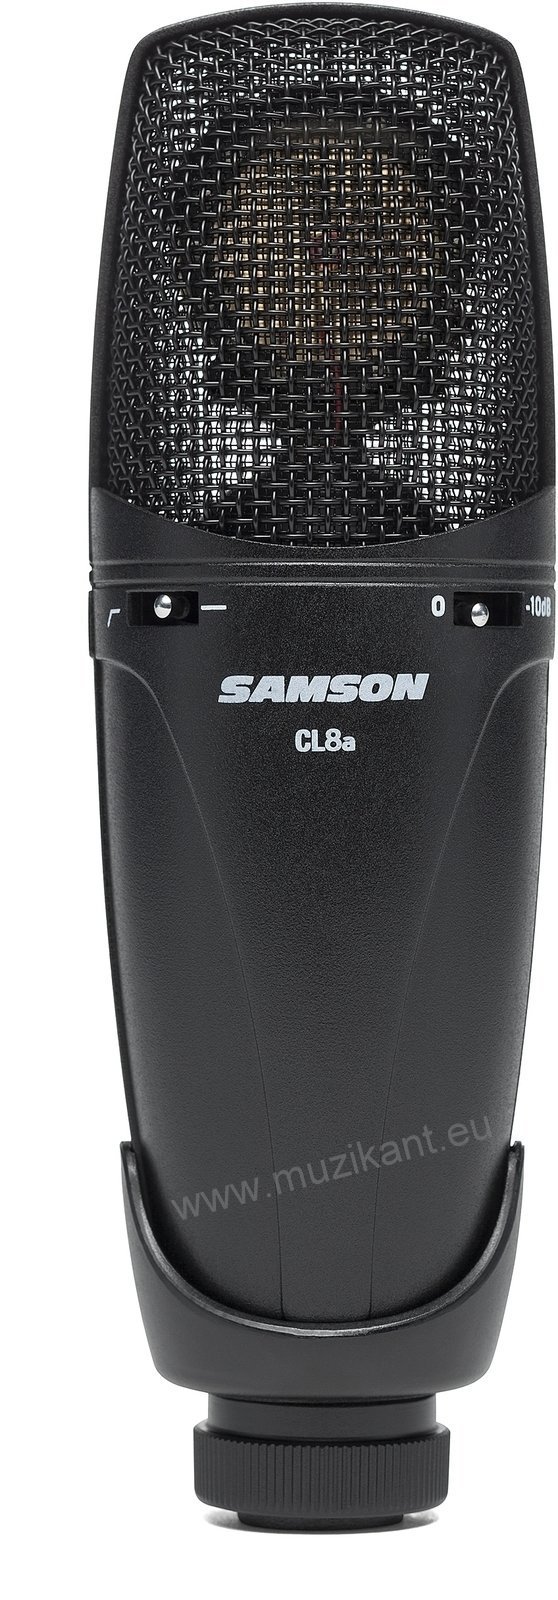 Štúdiový kondenzatorový mikrofón Samson CL8a